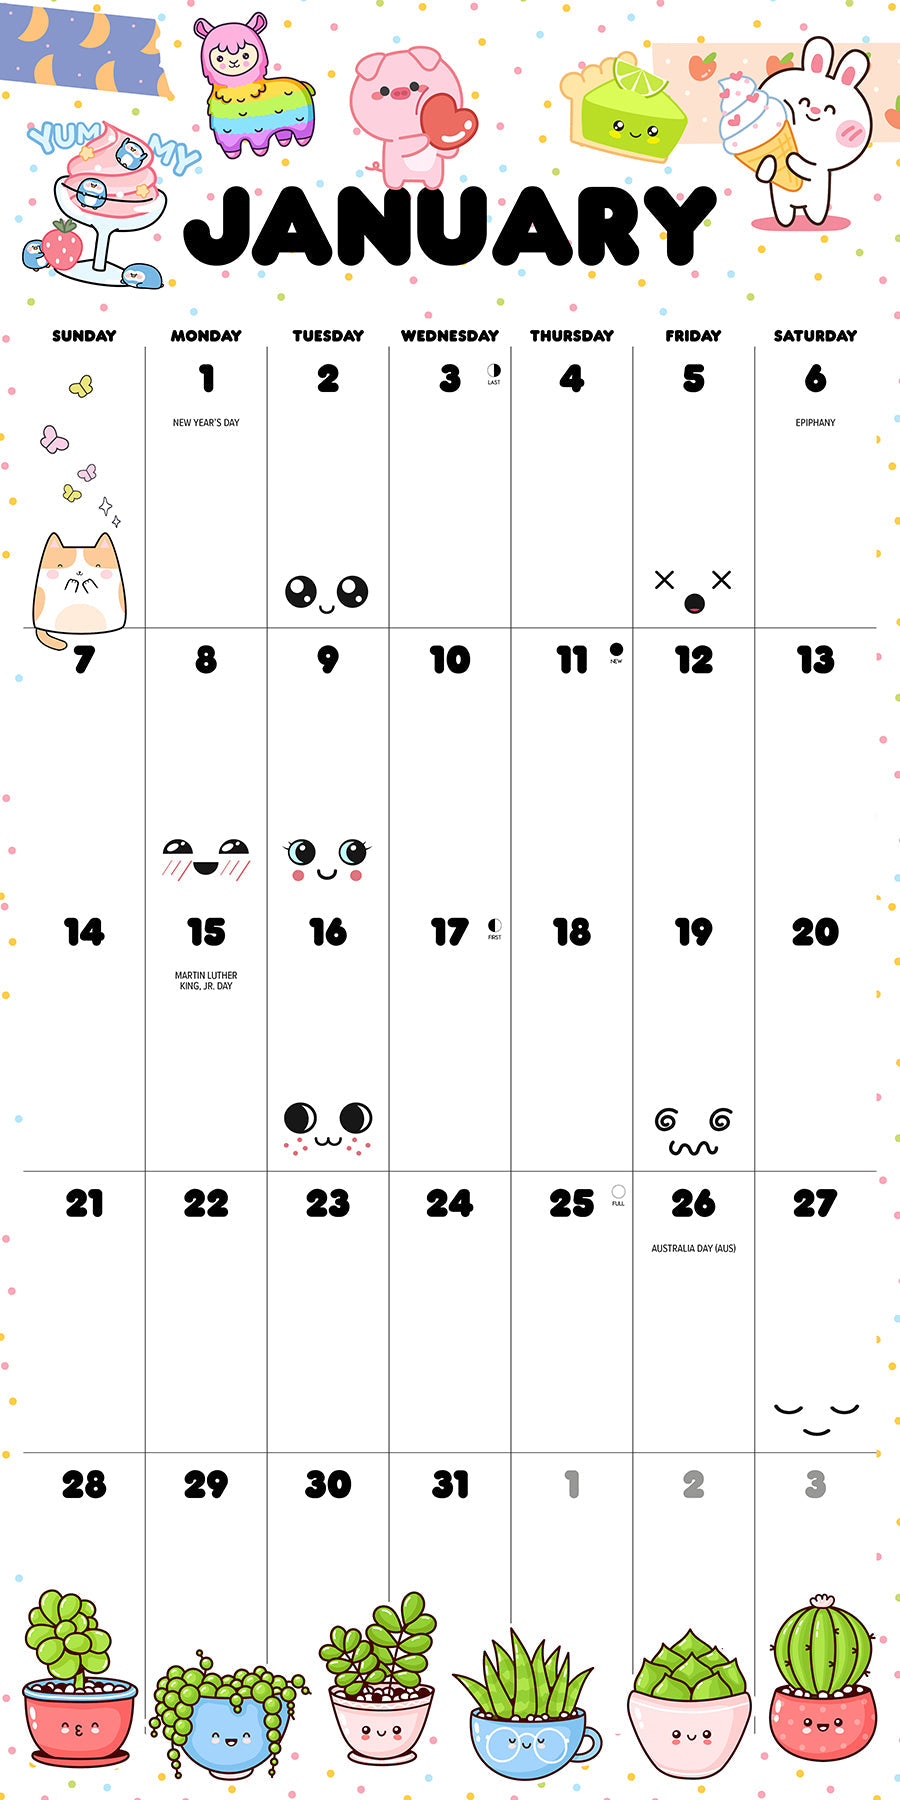 2024 Kawaii - Wall Calendar